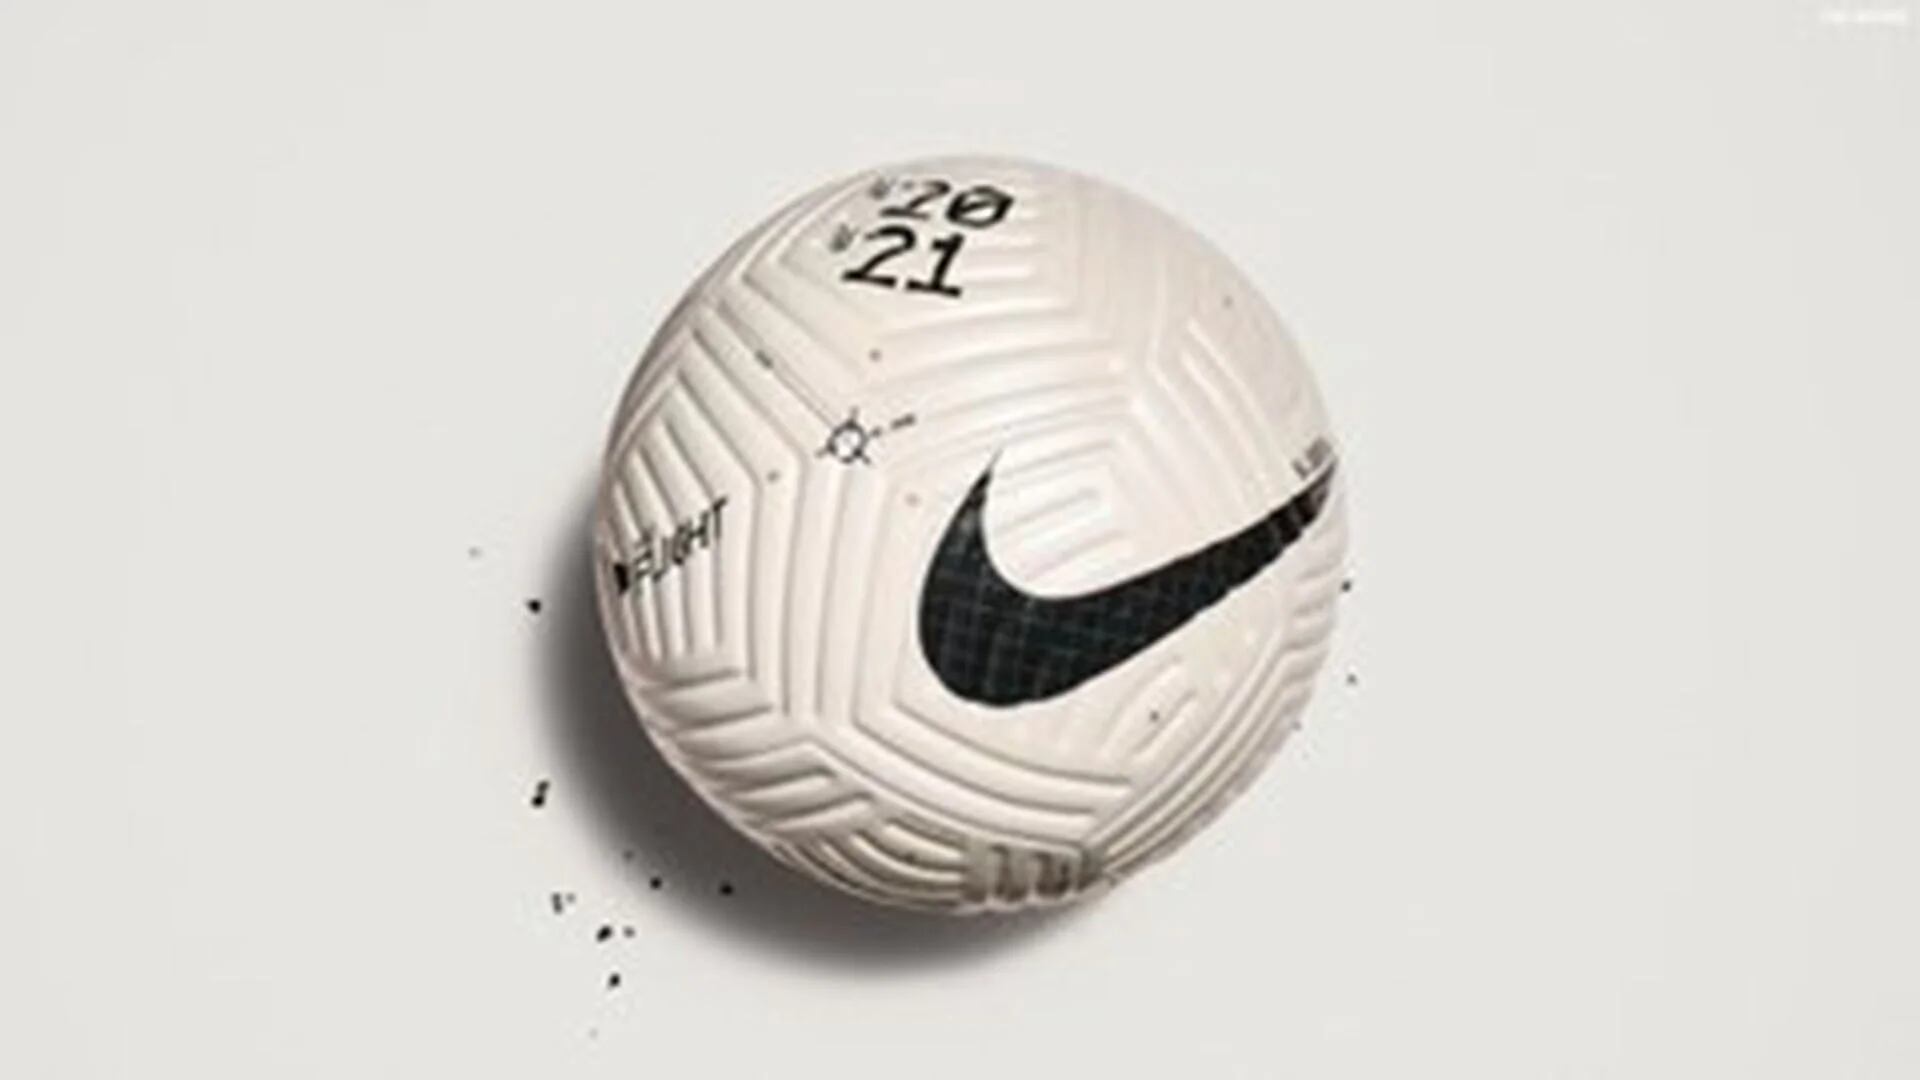 Así es la nueva pelota Premier League revolucionario diseño preocupa a los goleadores - Infobae